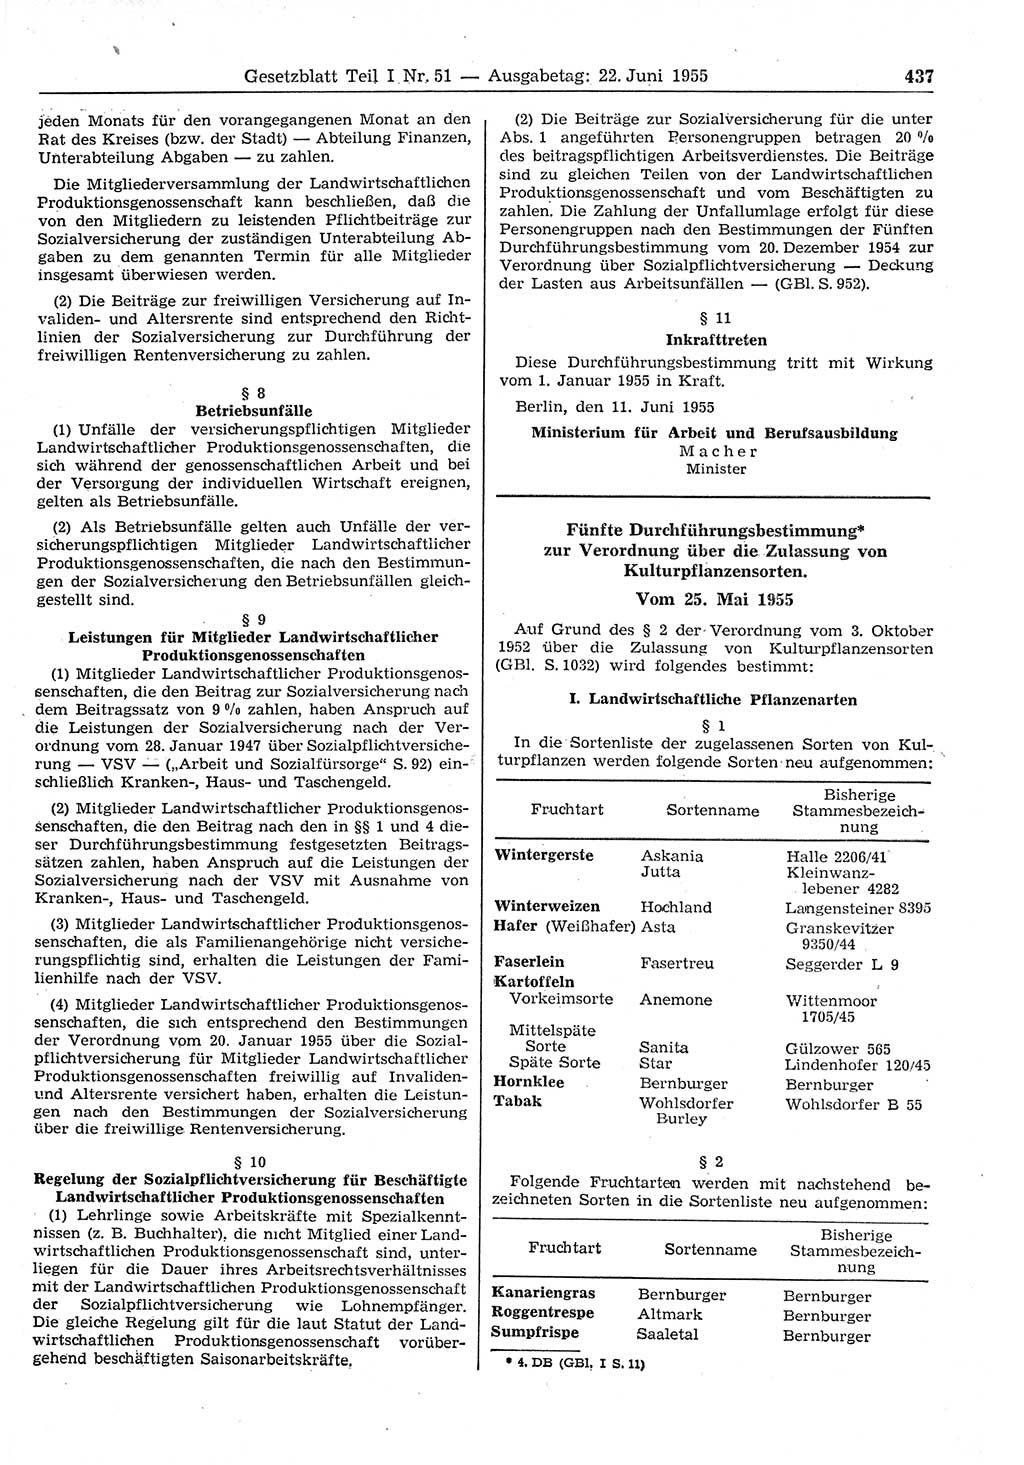 Gesetzblatt (GBl.) der Deutschen Demokratischen Republik (DDR) Teil Ⅰ 1955, Seite 437 (GBl. DDR Ⅰ 1955, S. 437)